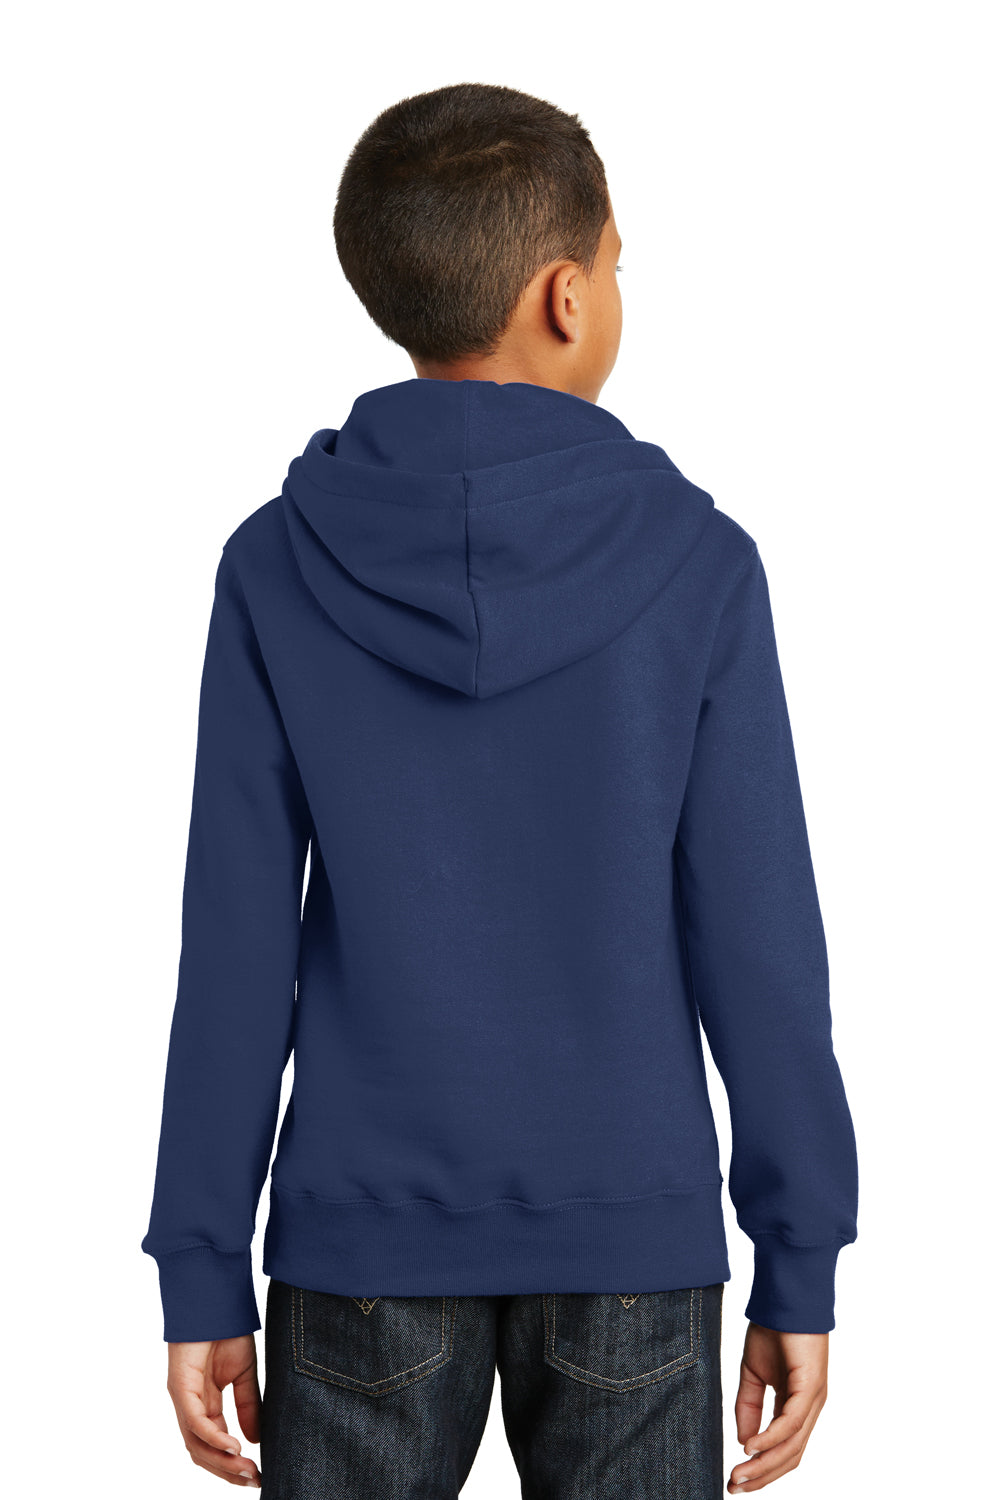 Port & Company PC850YH Youth Fan Favorite Fleece Hooded Sweatshirt Hoodie Navy Blue Back